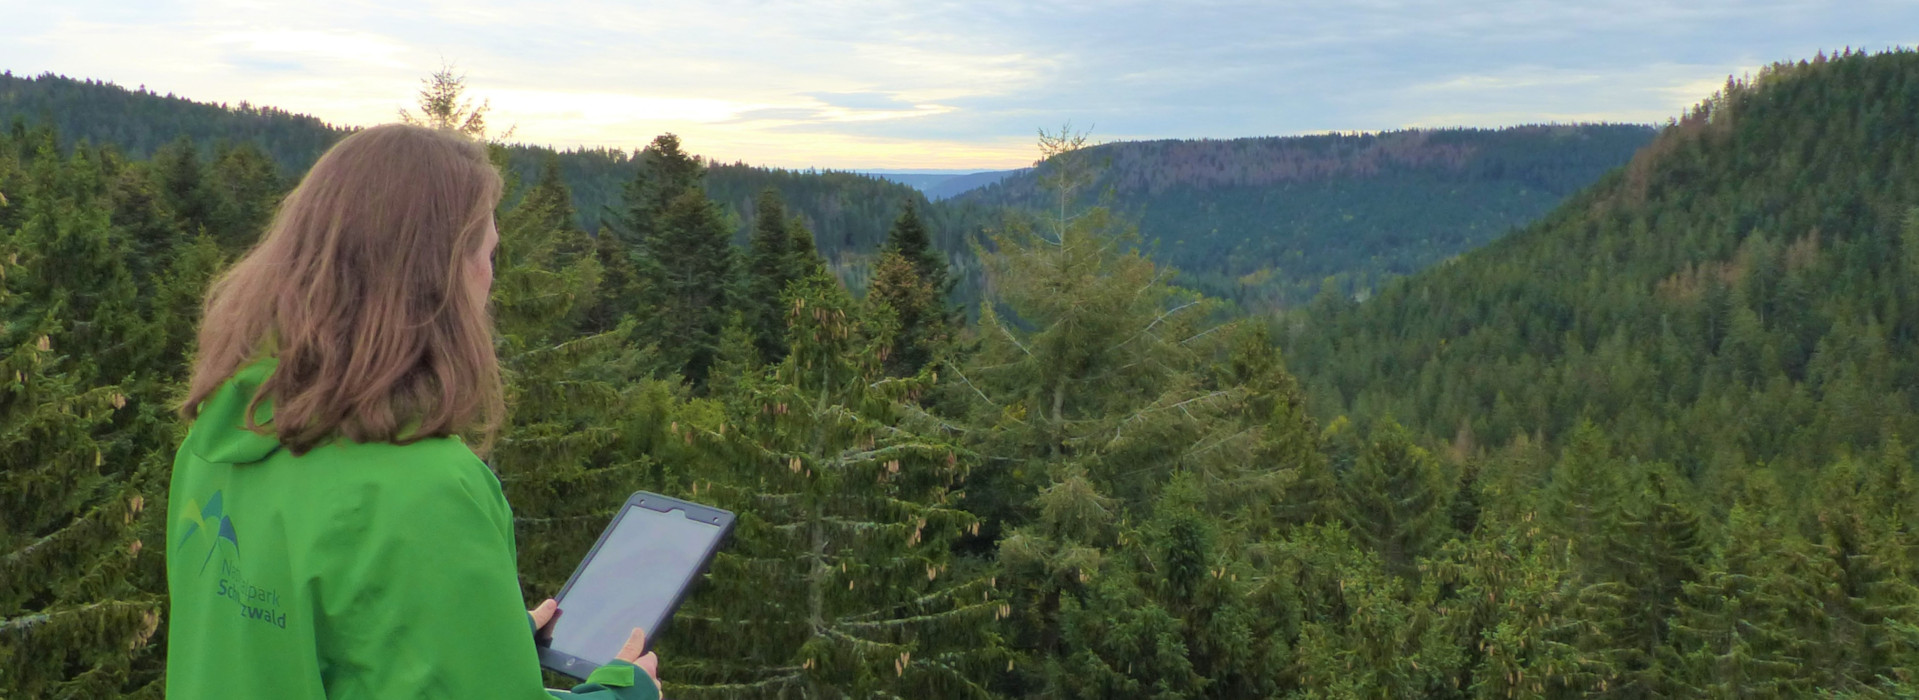 Eine Frau in einer grünen Regenjacke des Nationalparks. Sie hat ein Tablet in der Hand und schaut von einem Aussichtspunkt über den Wald.